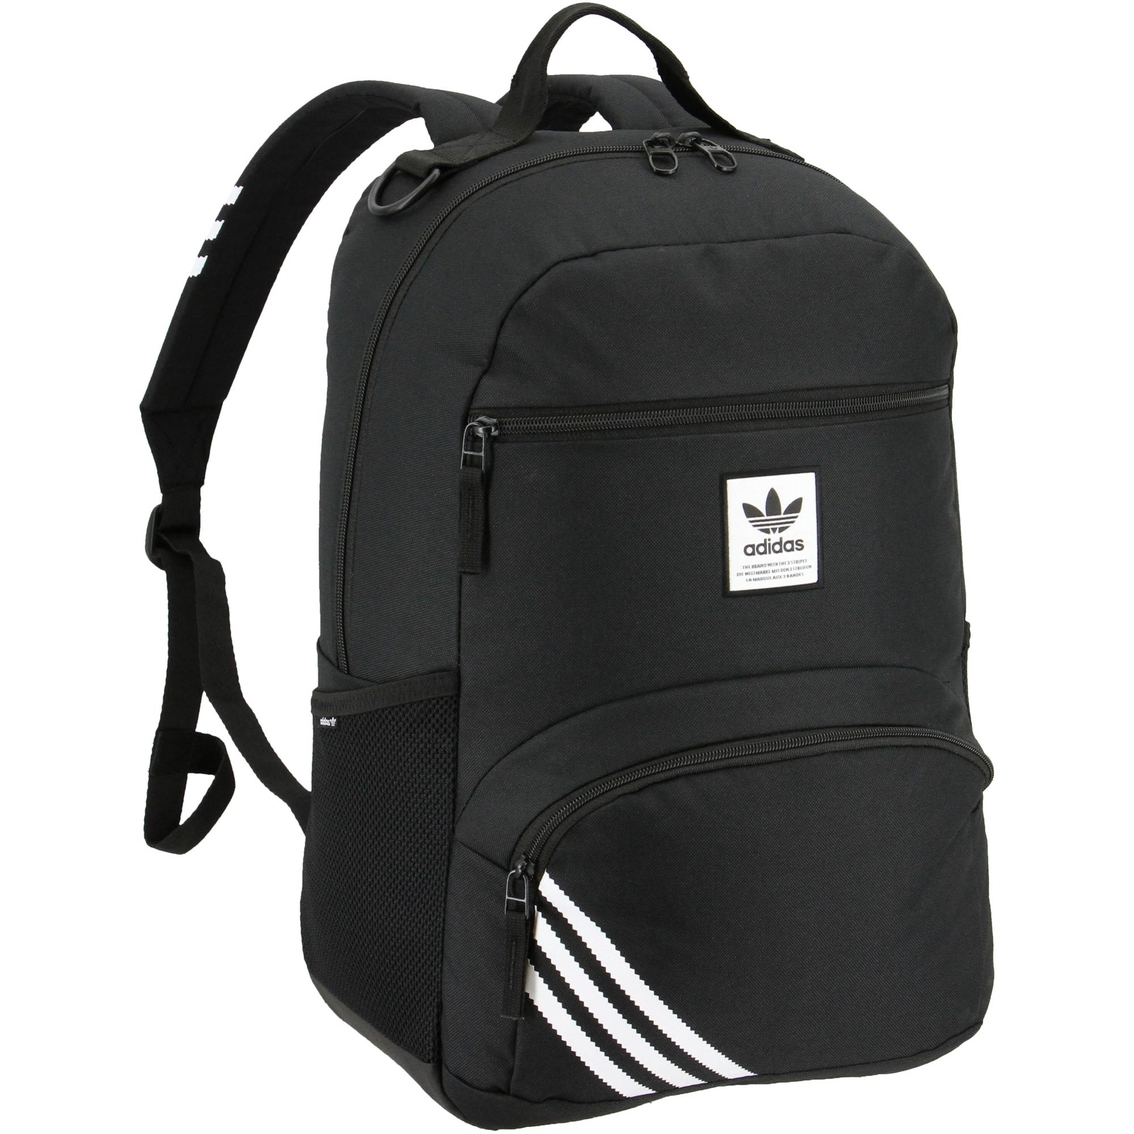 Adidas Originals National 2.0 Backpack | Backpacks | Clothing